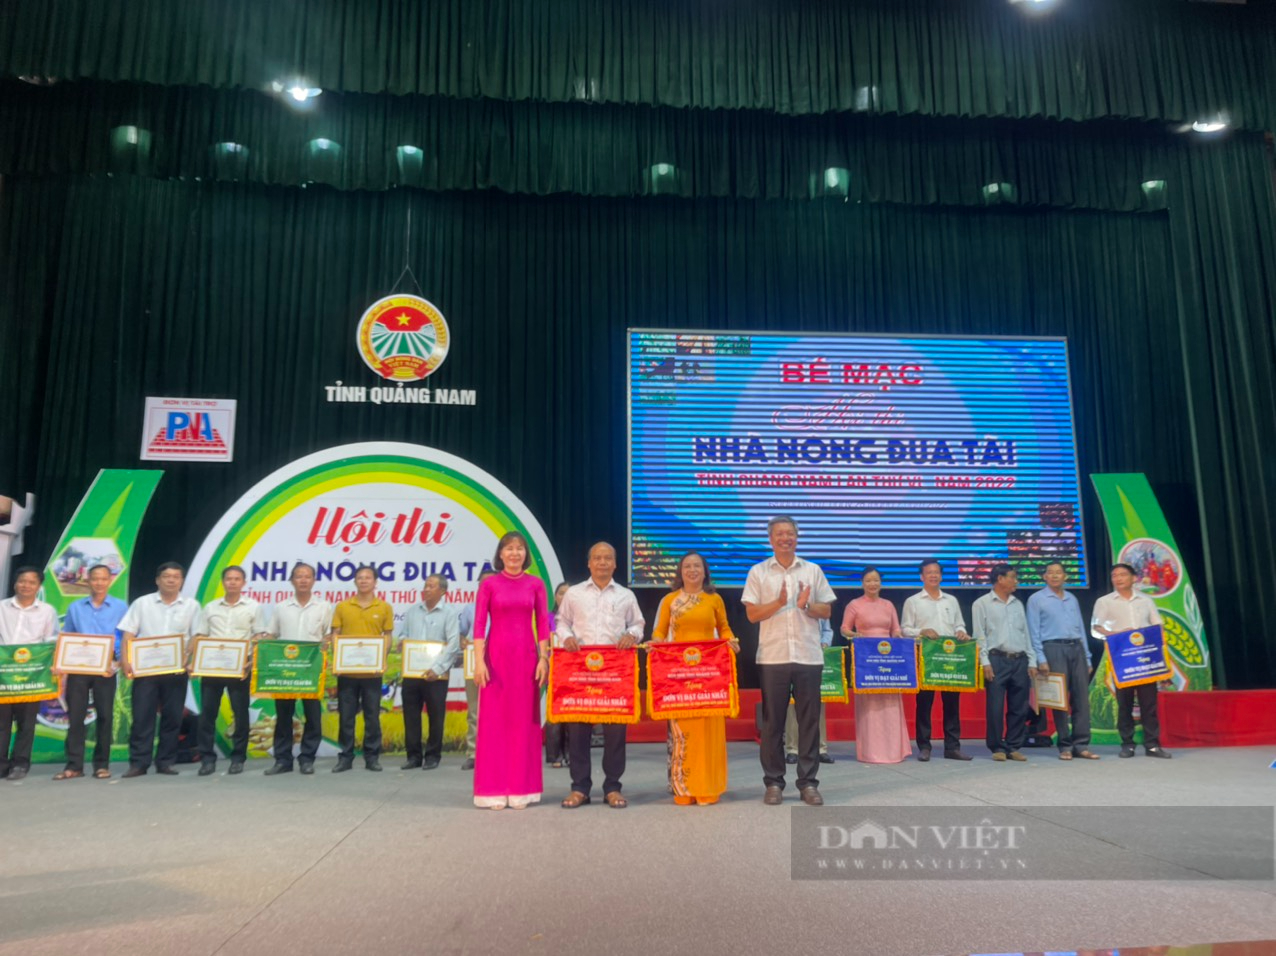 Điện Bàn và Nam Giang vô địch hội thi nhà nông đua tài Quảng Nam lần VI - Ảnh 1.